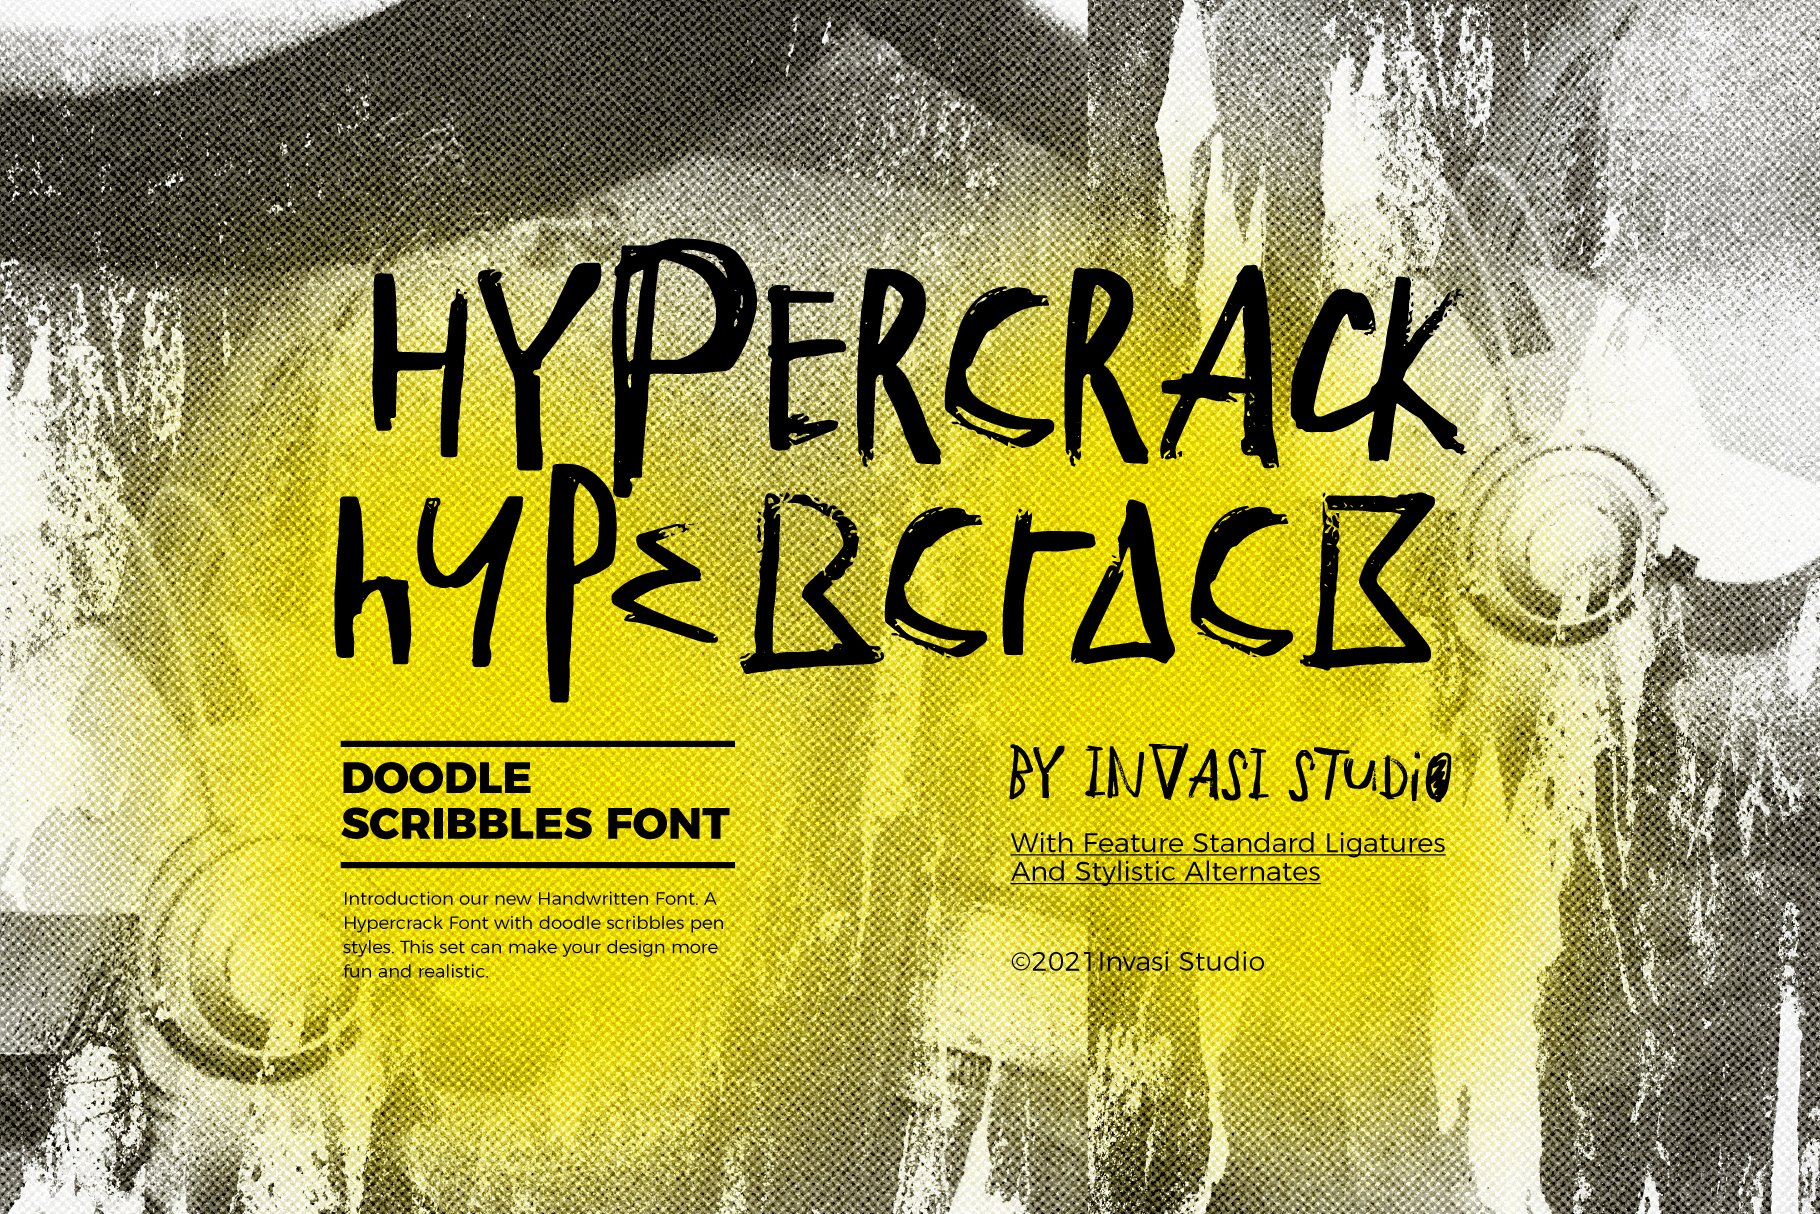 Hypercrack - Scribbles Font cover image.